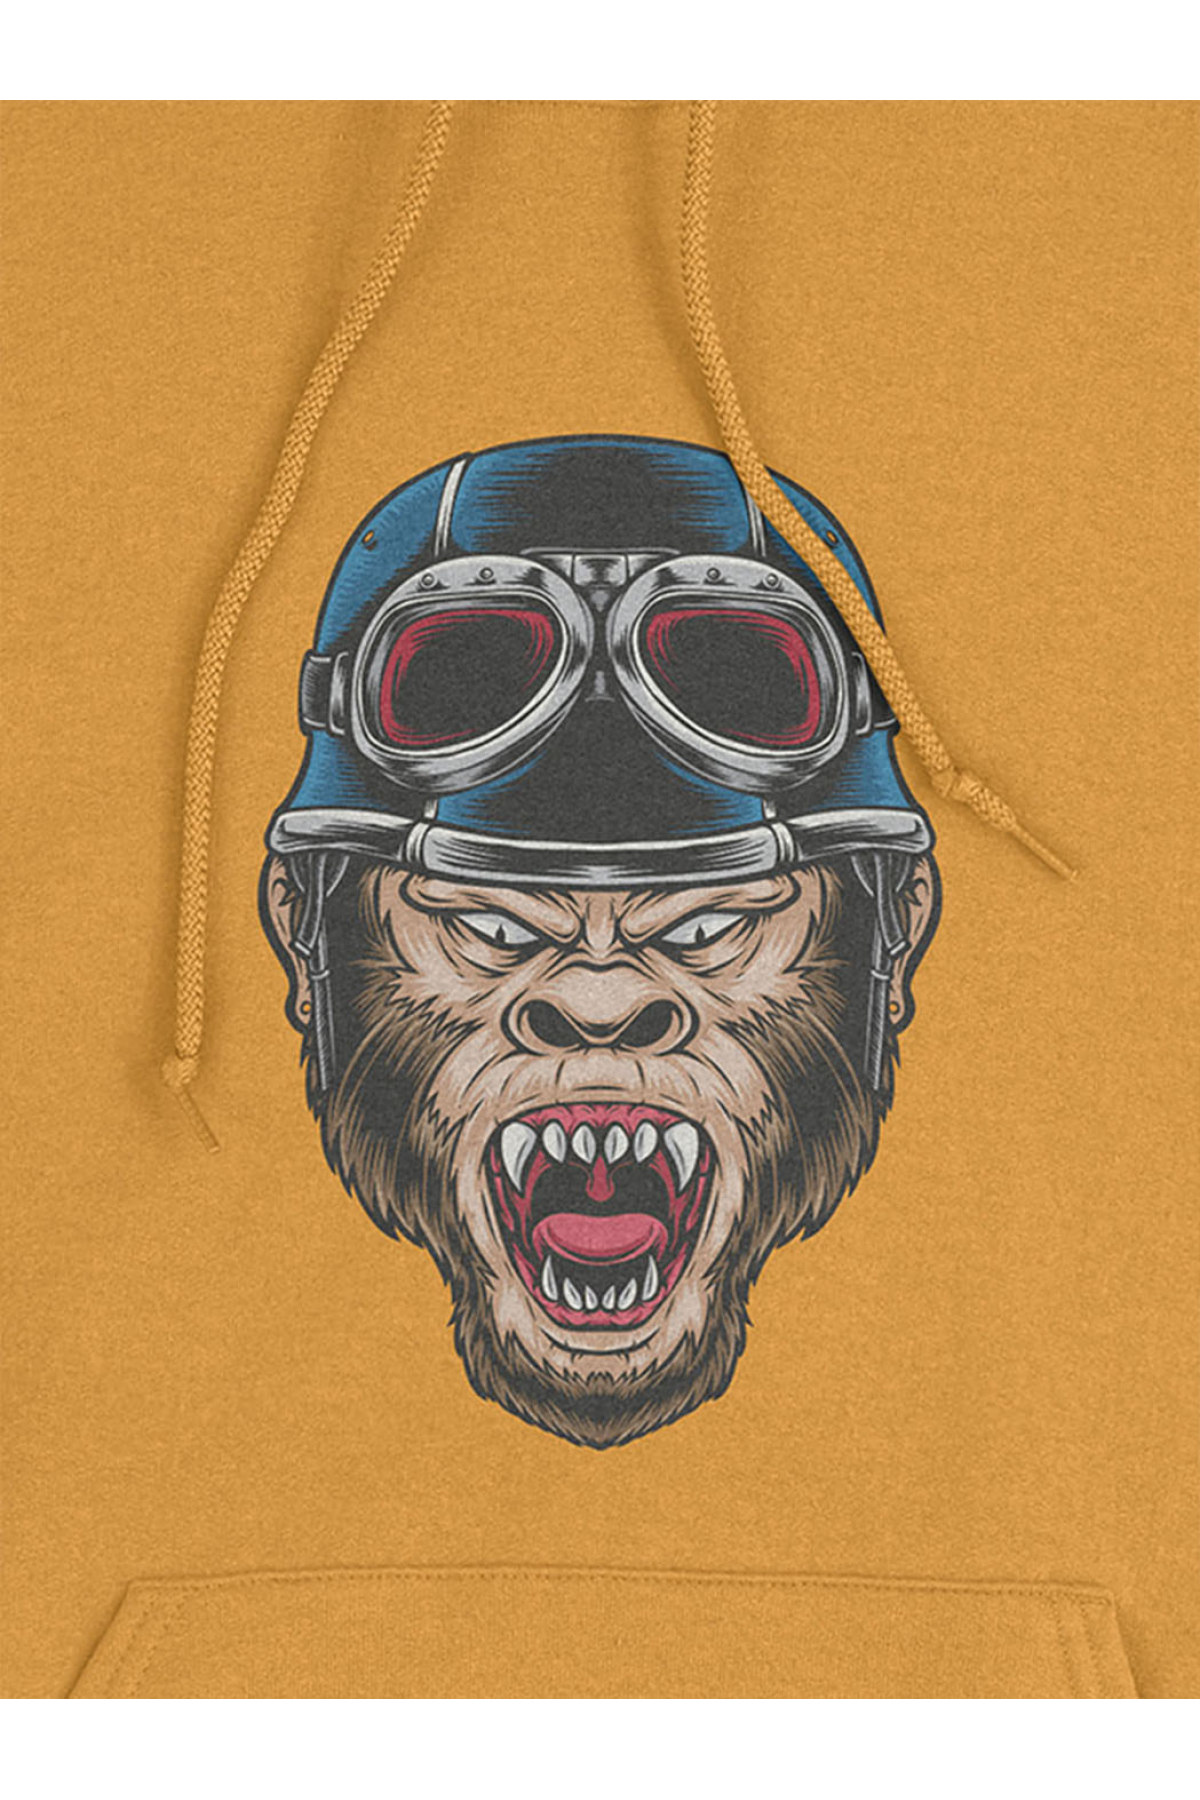 MIJUSTORE Kızgın Maymun Baskılı 3 iplik Kalın Oversize Siyah Sweatshirt Hoodie DH11456